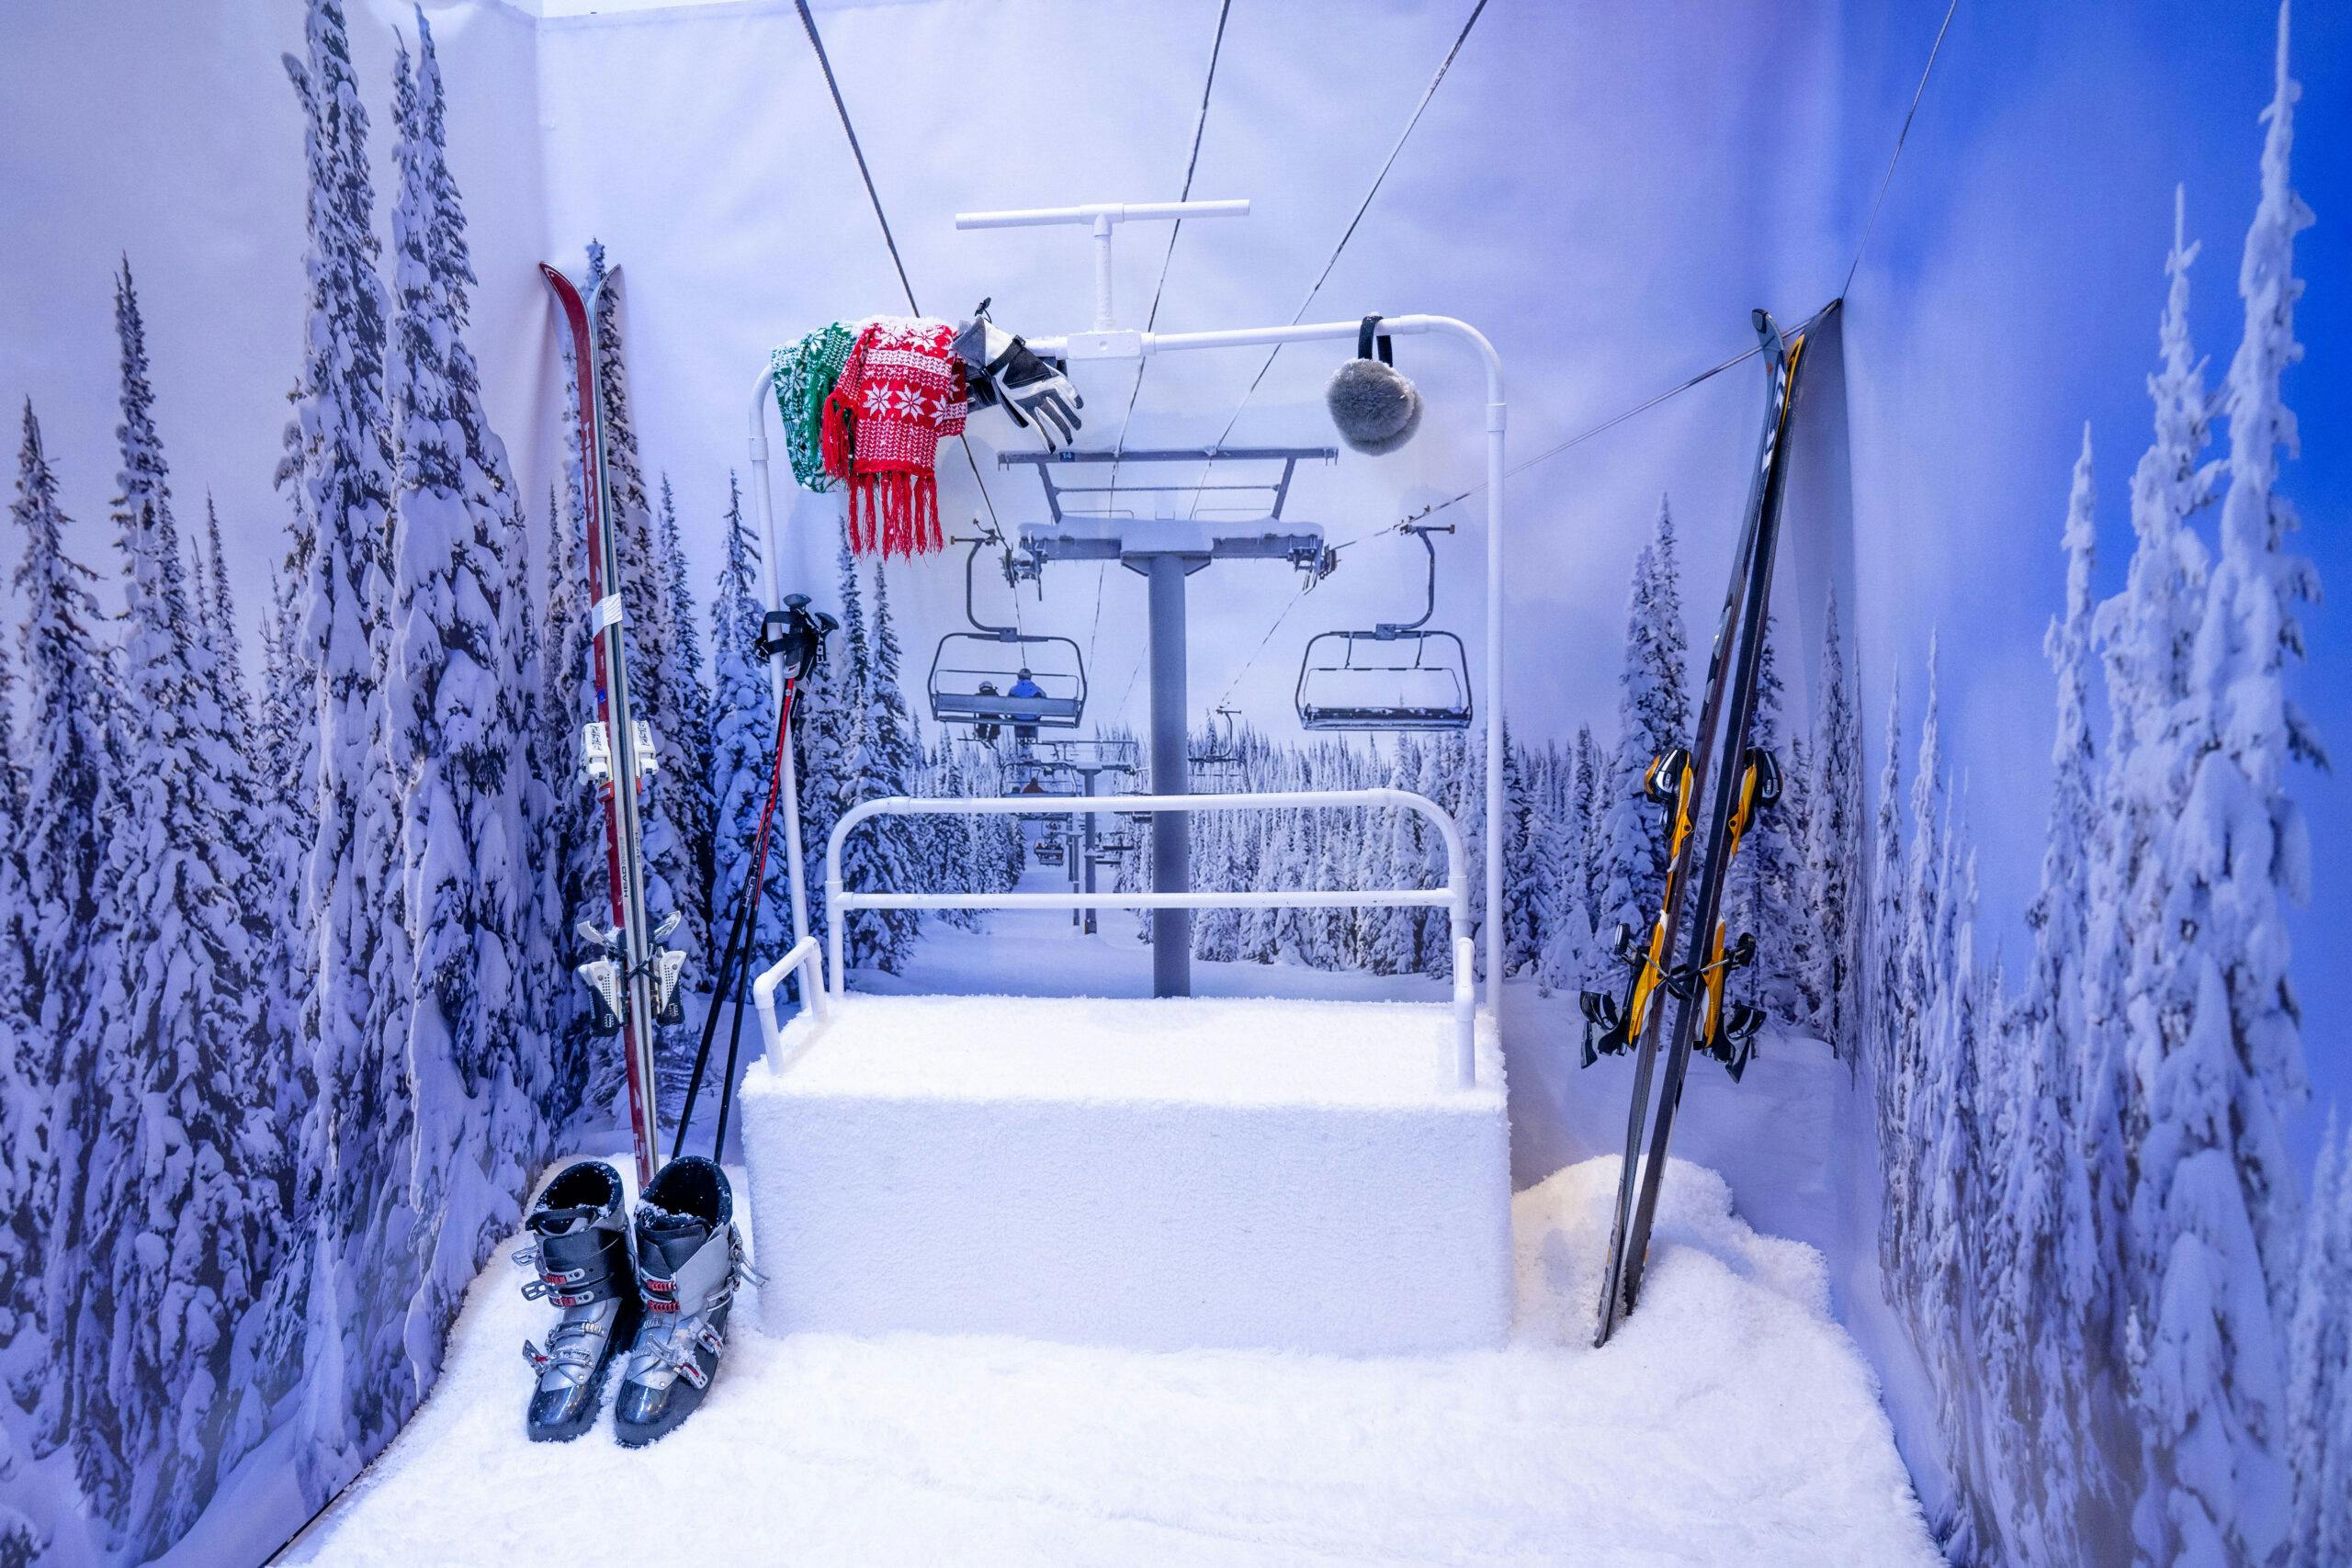 78 Best Apres ski party ideas  apres ski party, apres ski, skiing